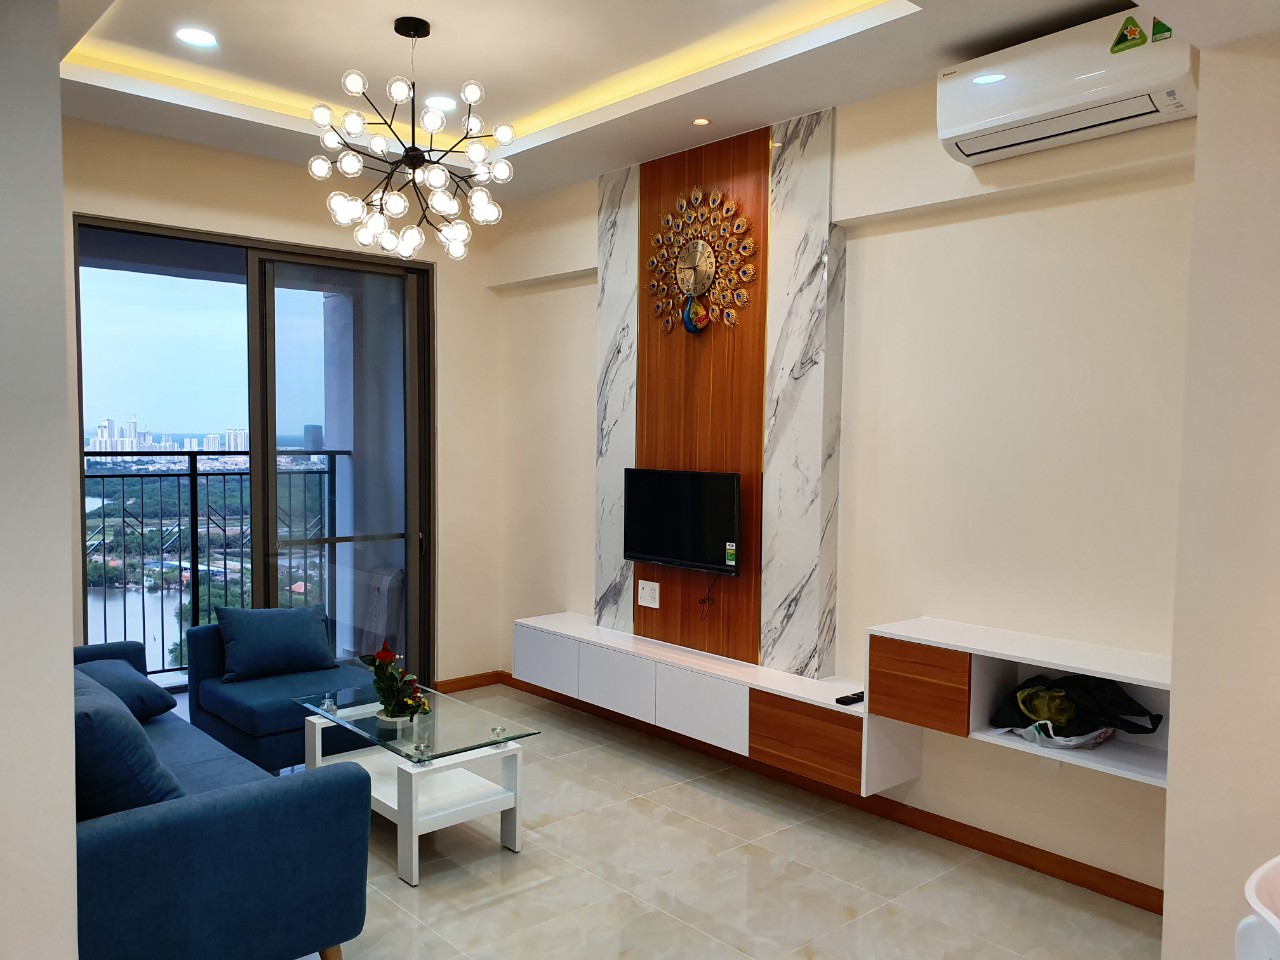 Cần cho thuê căn hộ Phú Hoàng Anh - Nhà Bè, 2 PN giá từ 7tr/tháng. LH 0947535251